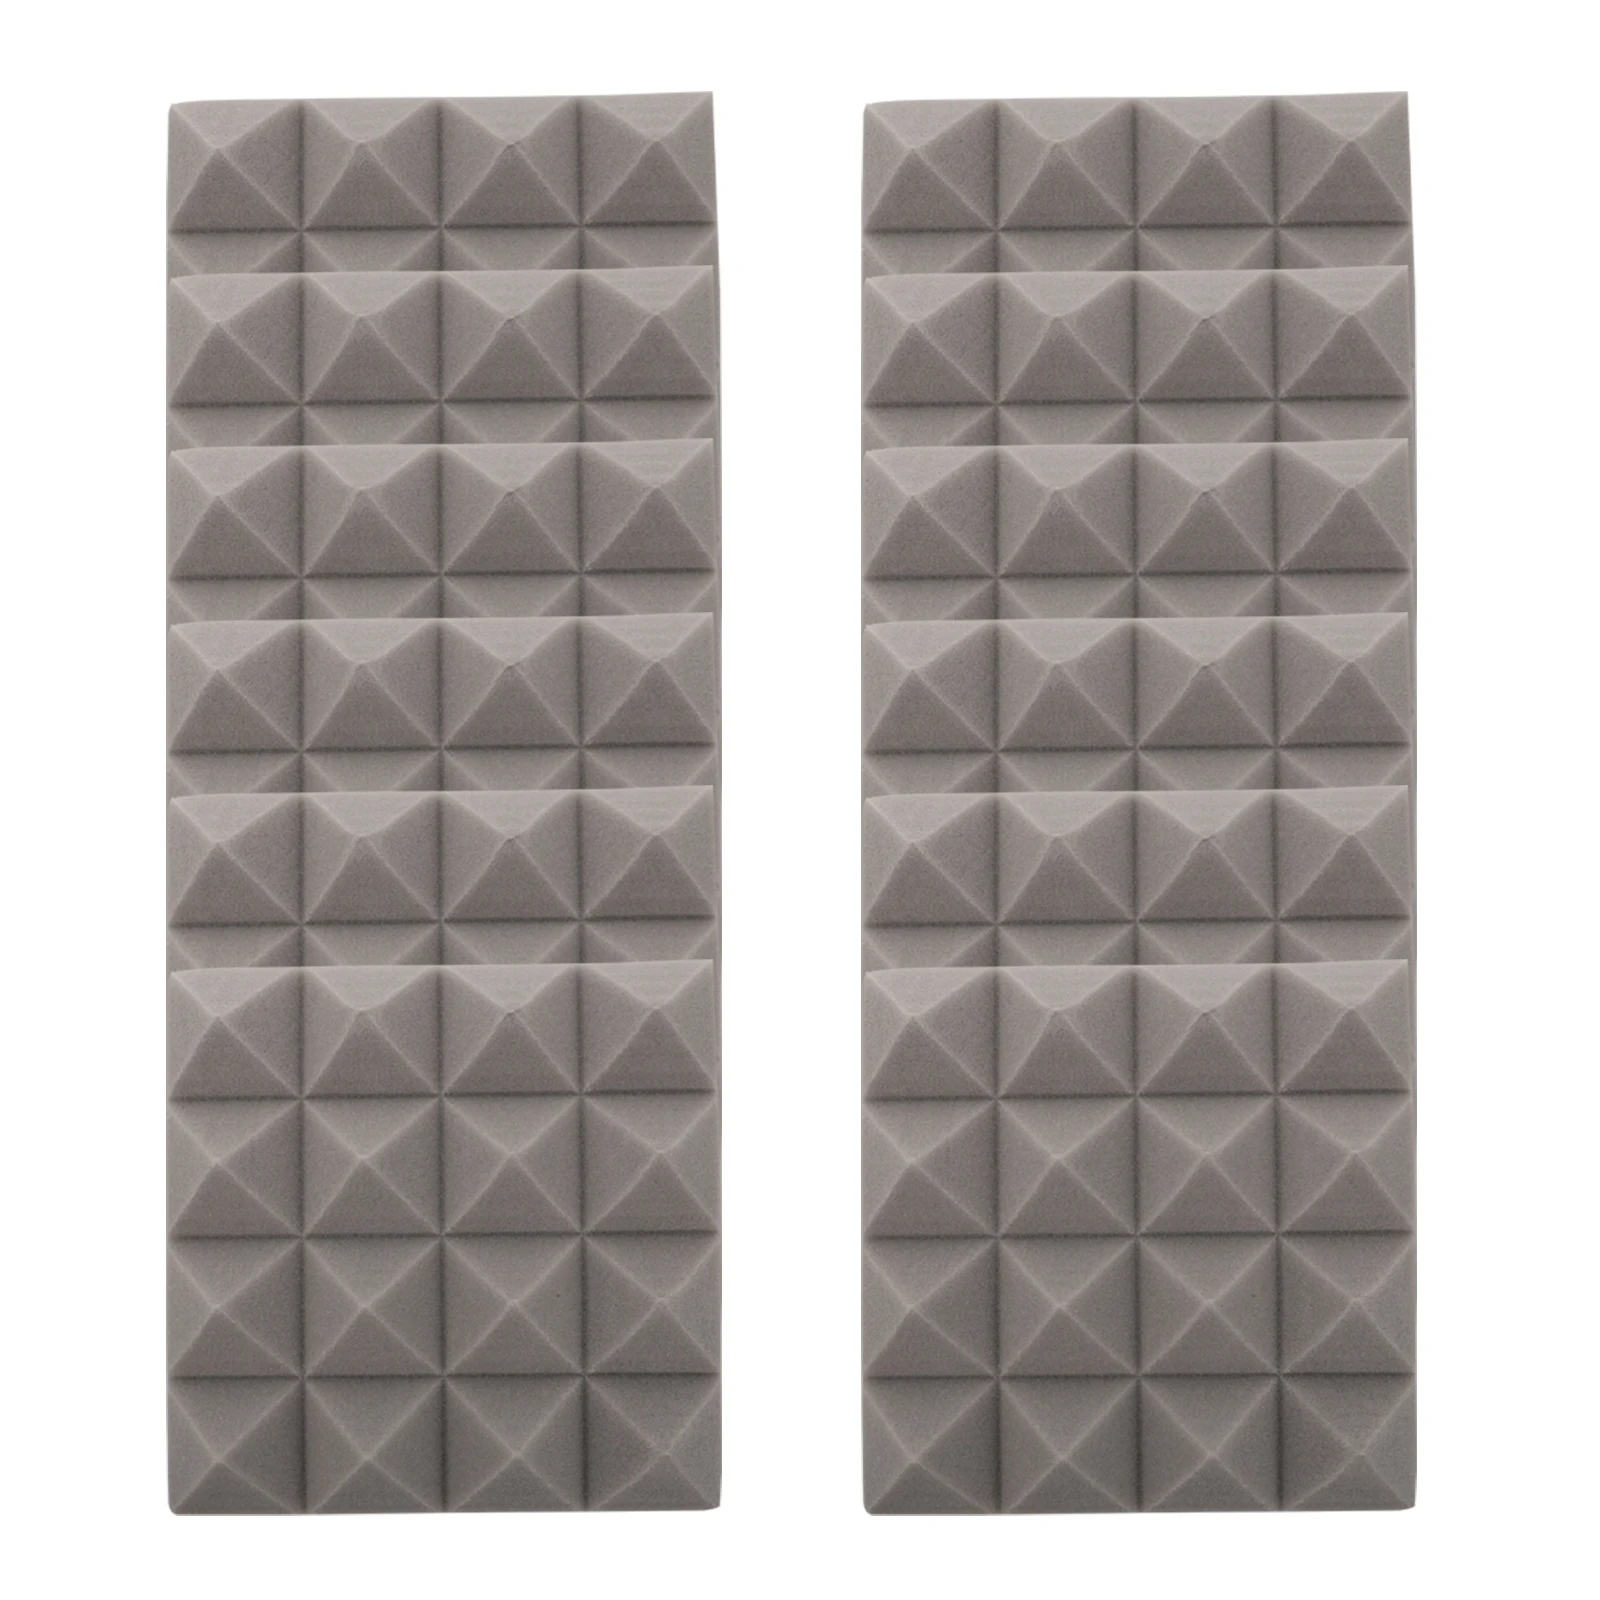 

12Pcs 25x25x5cm Studio Acoustic Foam Soundproof Pyramid Sound Absorption Treatment Panel Tile Protective Sponge Sealing Strip